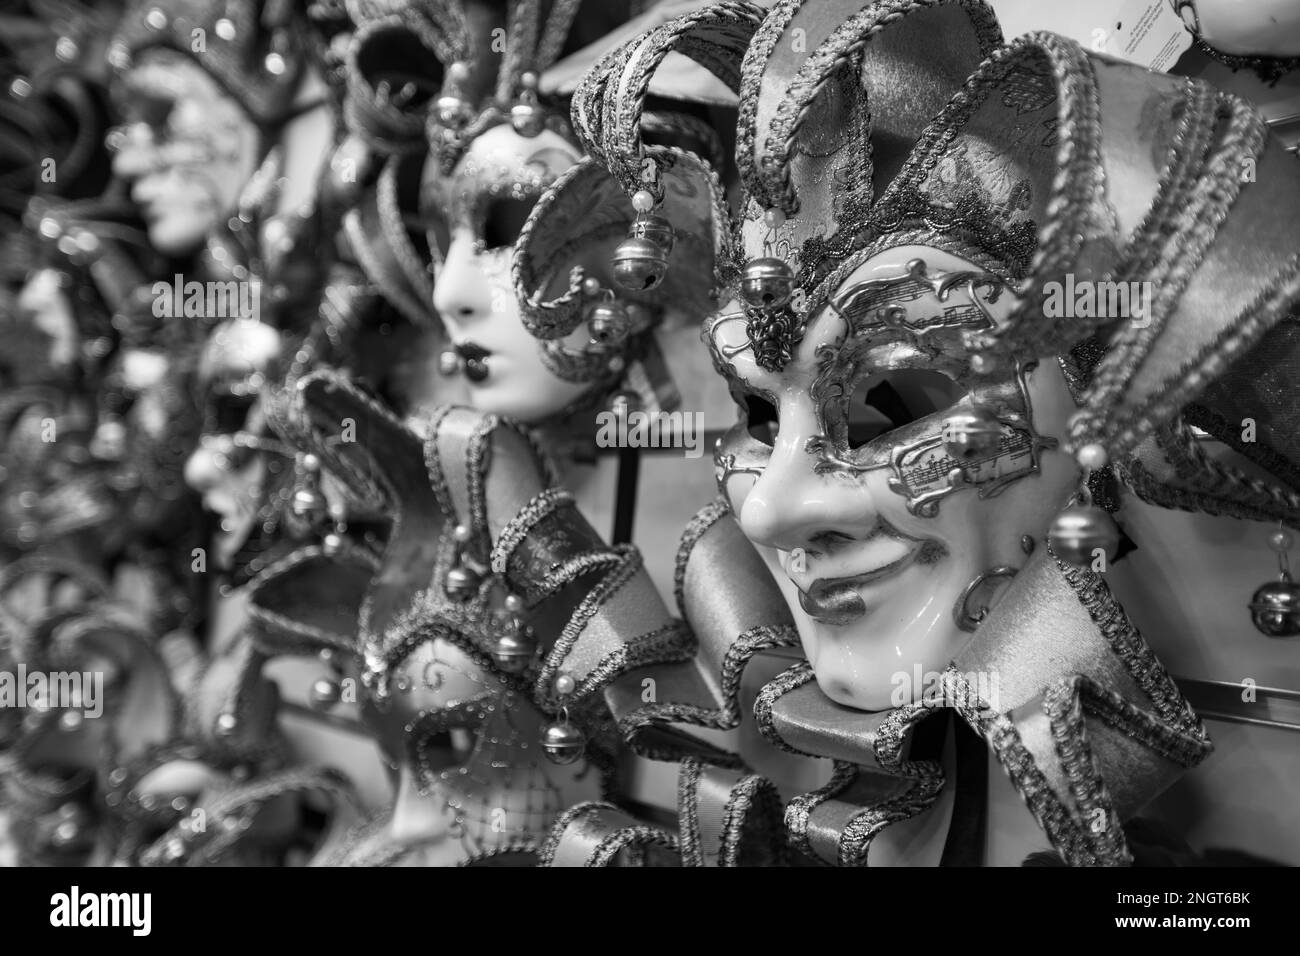 Venetian Carnivale mask on display in Venice Stock Photo